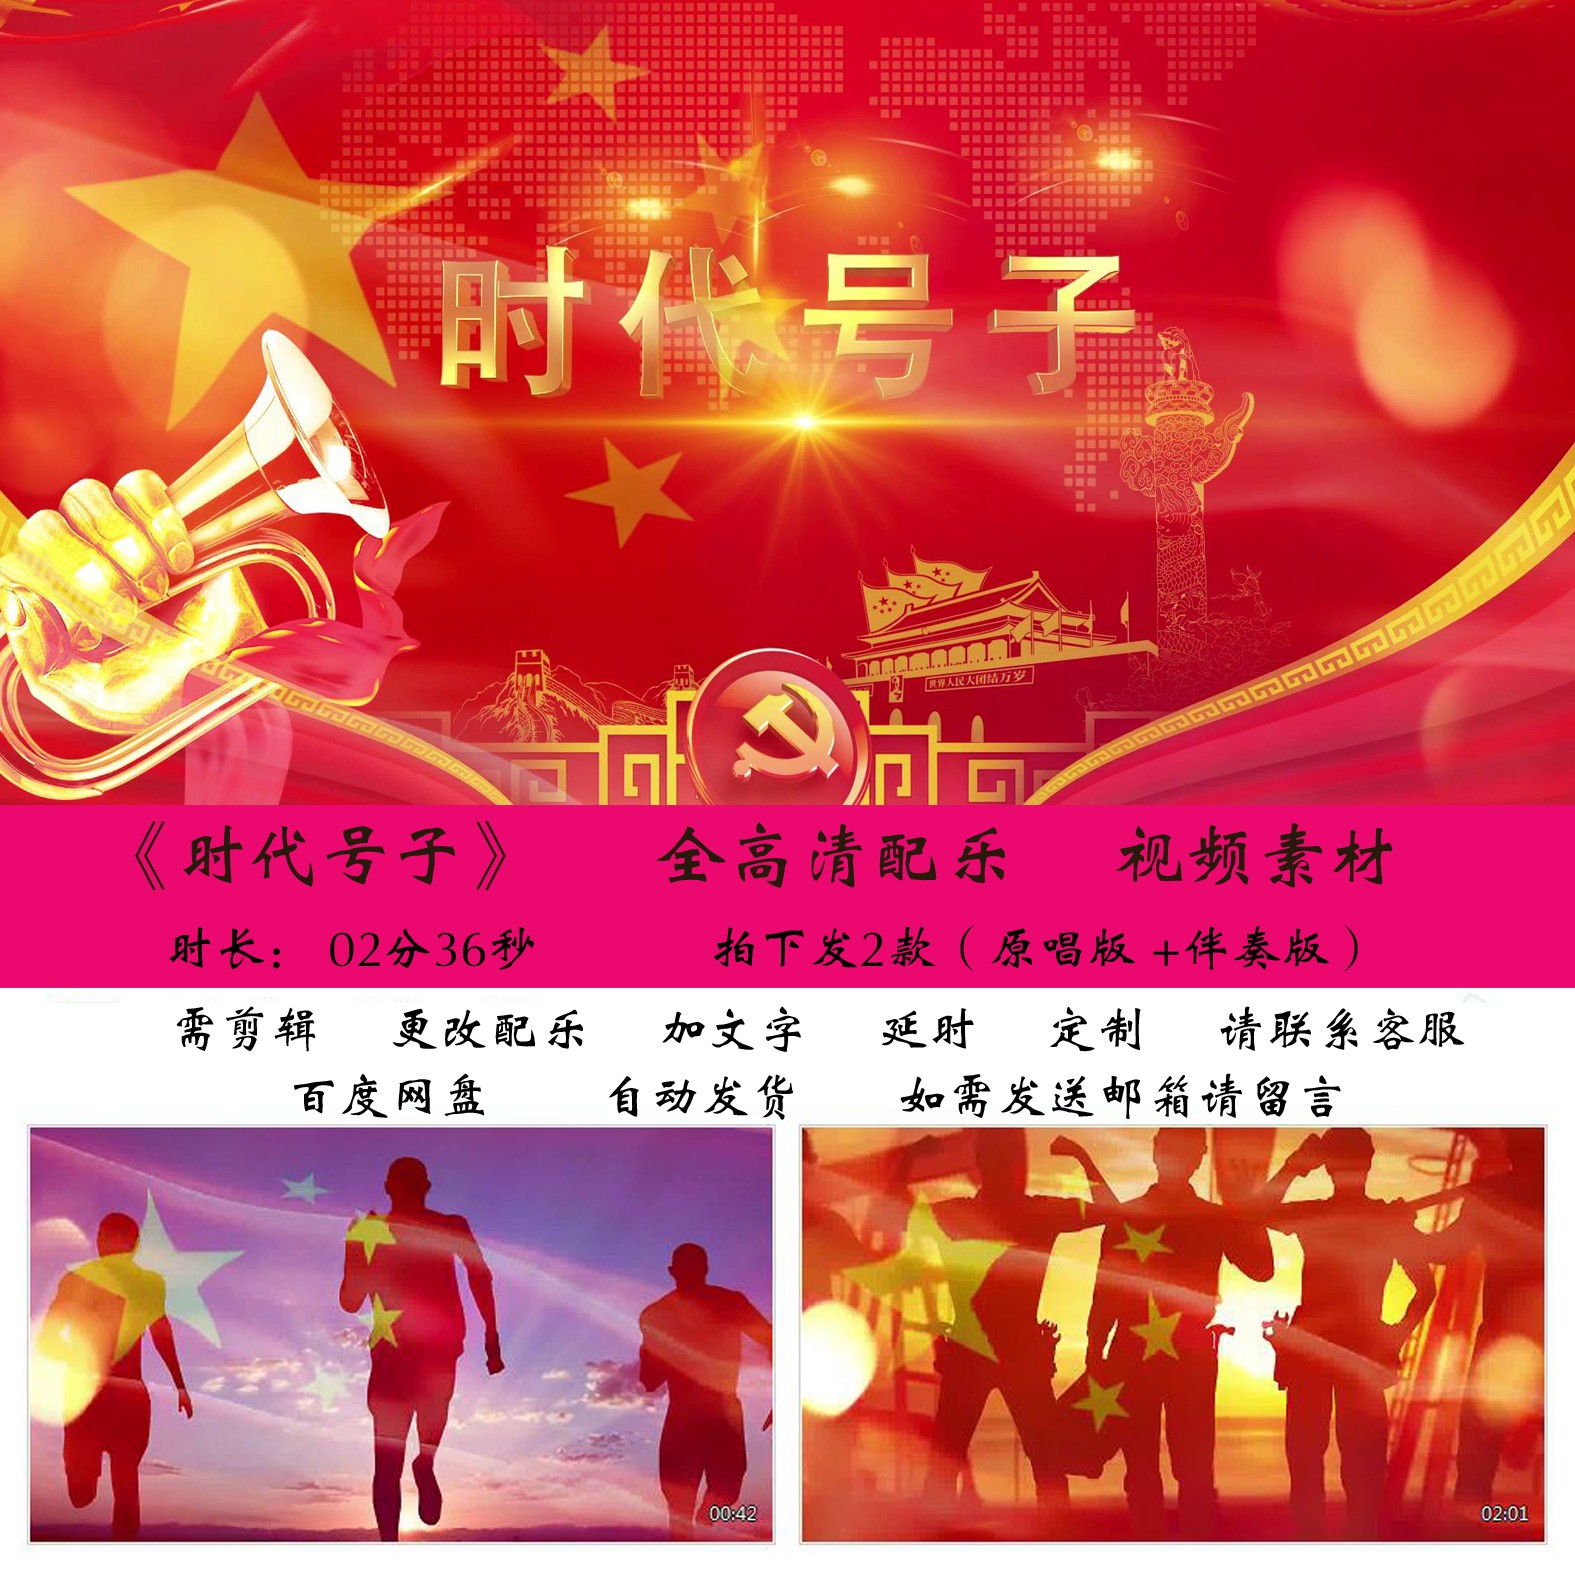 时代号子励志团队工人奋斗中国梦歌舞大屏背景视频素材源文件模板